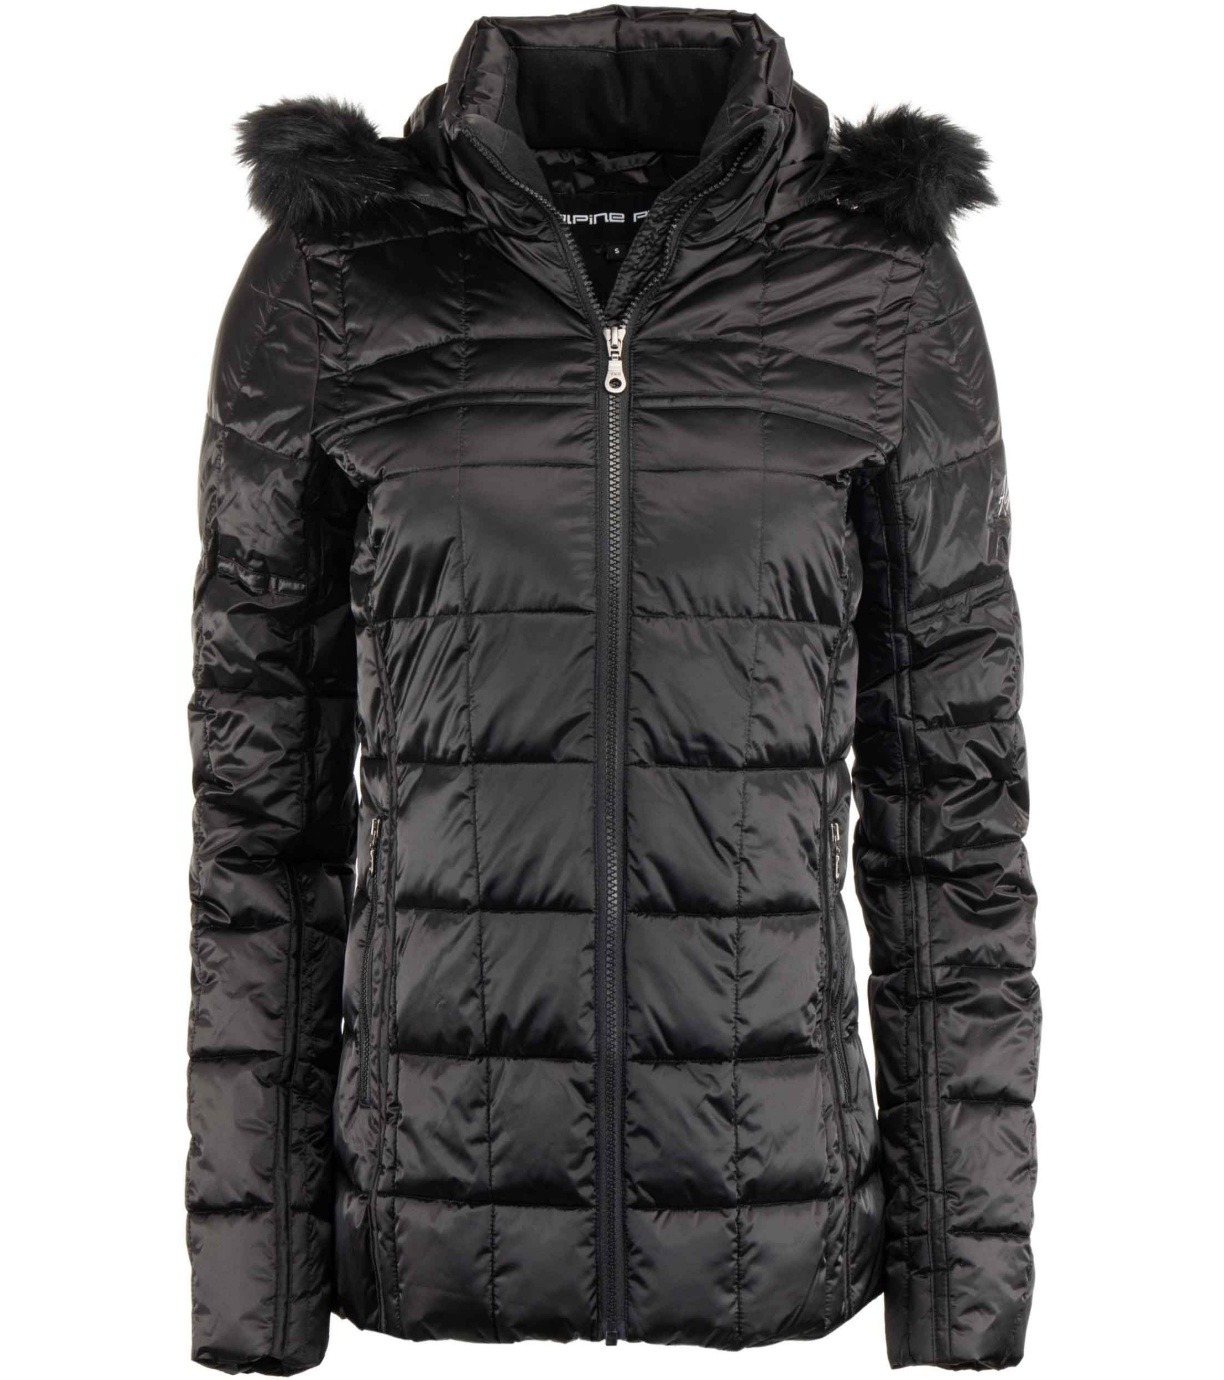 Dámská zimní bunda LEMEKA ALPINE PRO černá